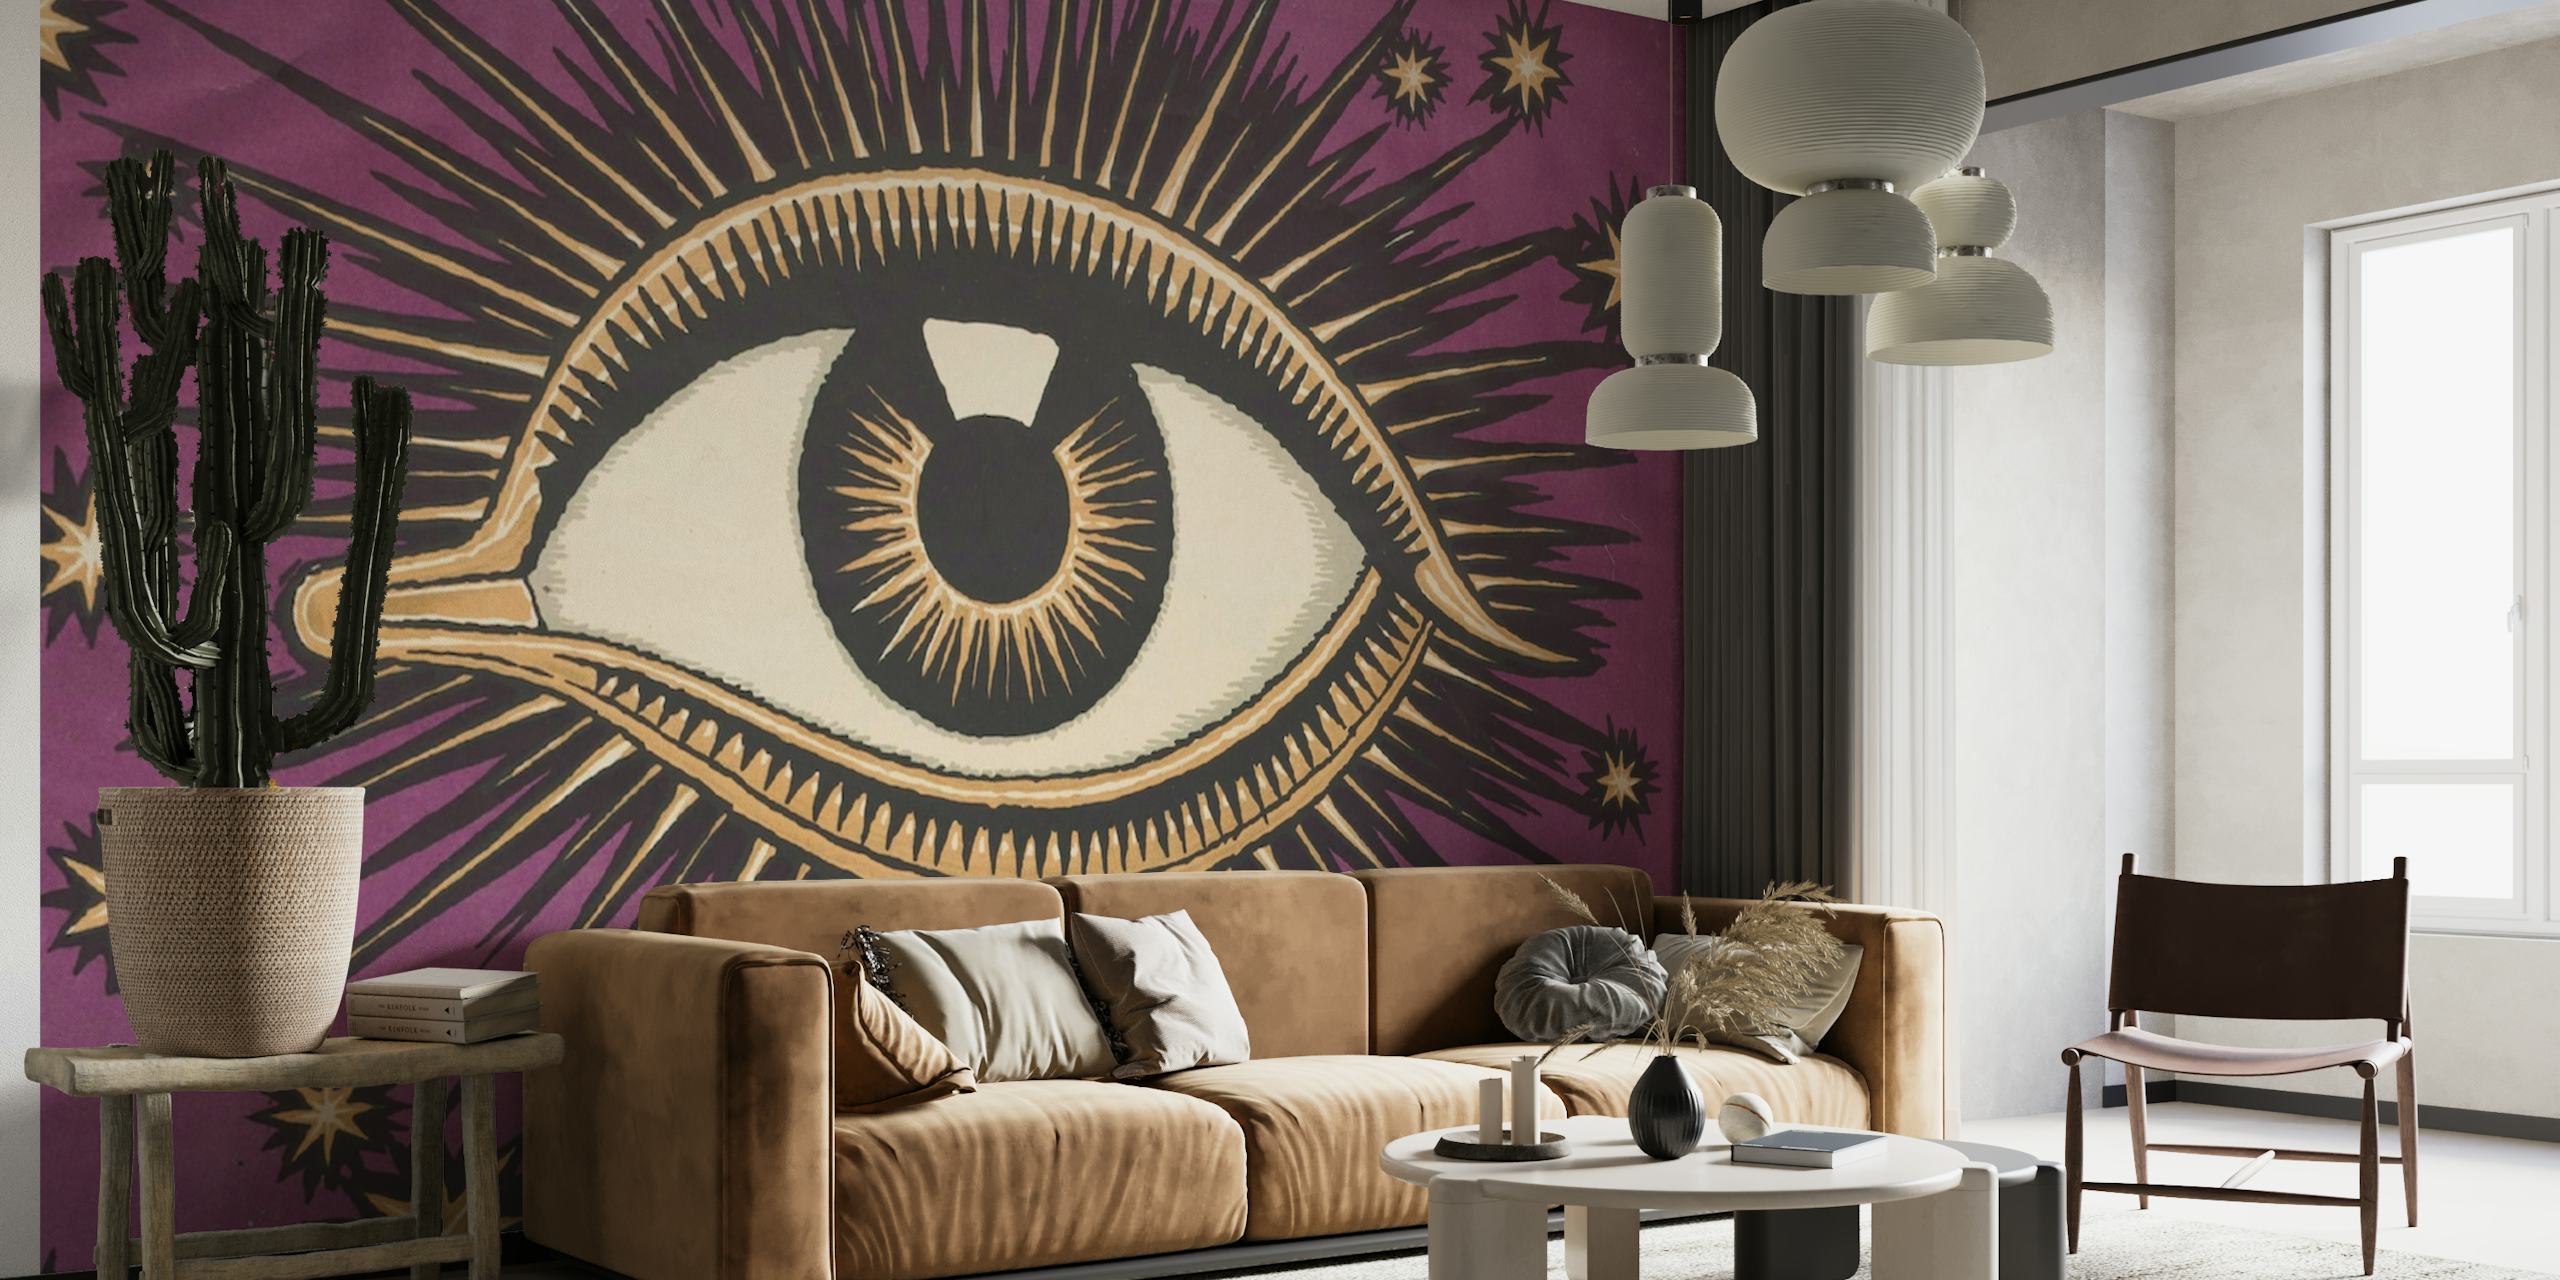 All Seeing Eye-muurschildering met een ingewikkeld oogsymbool met sterren op een paarse achtergrond